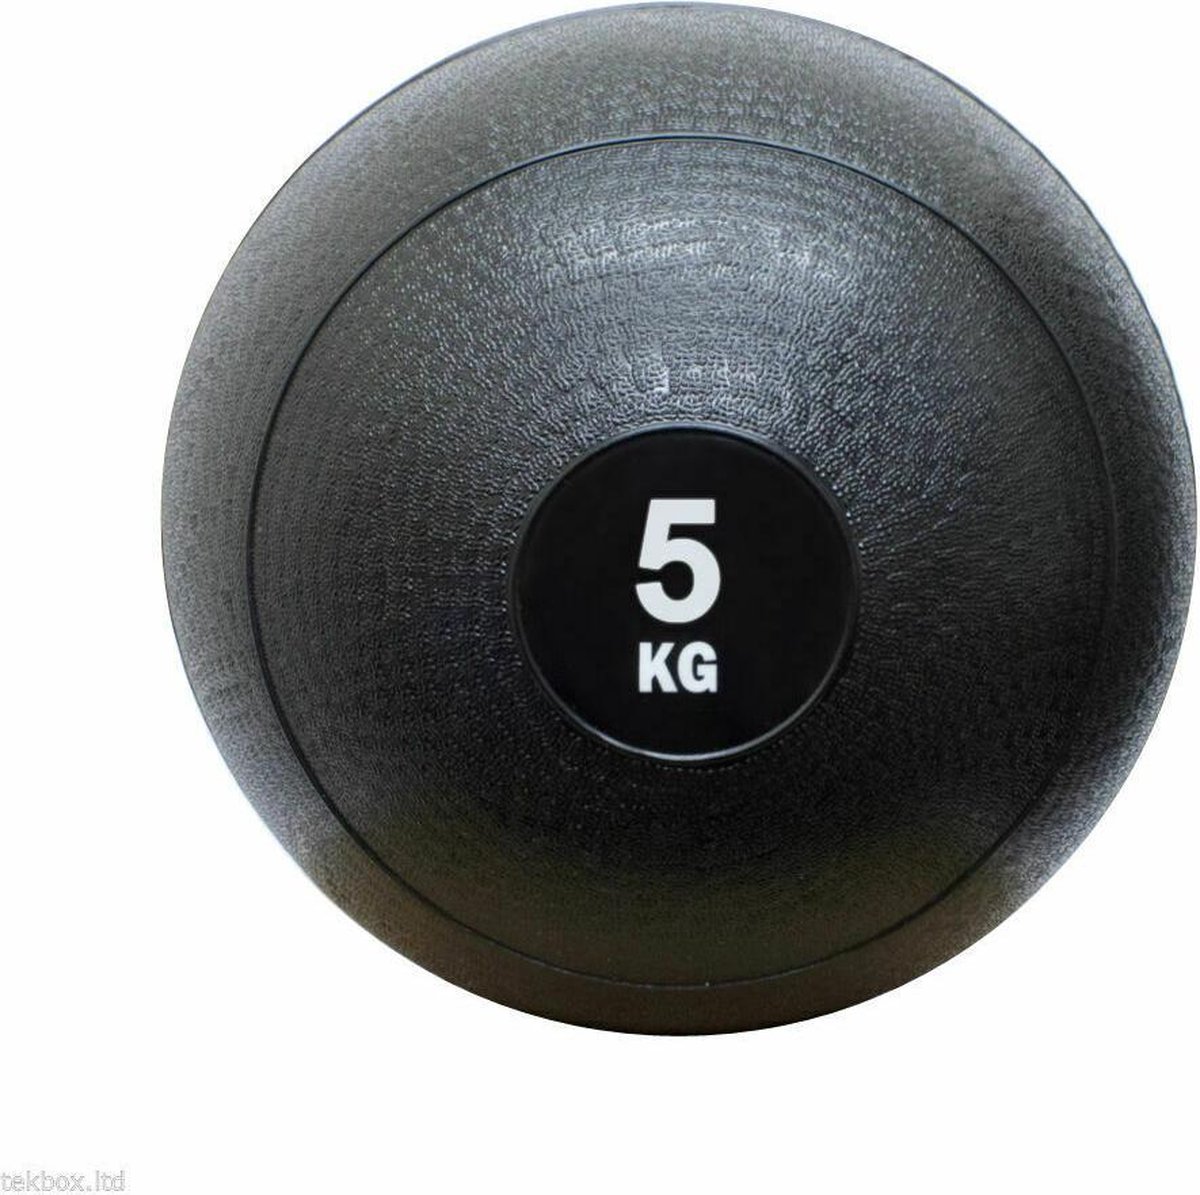 Medicijn bal - medicine ball - sand ball - crossfit ball - fitness bal - 5 kg - zwart -gewichten - krachttraining - fitness accessoires - home workout